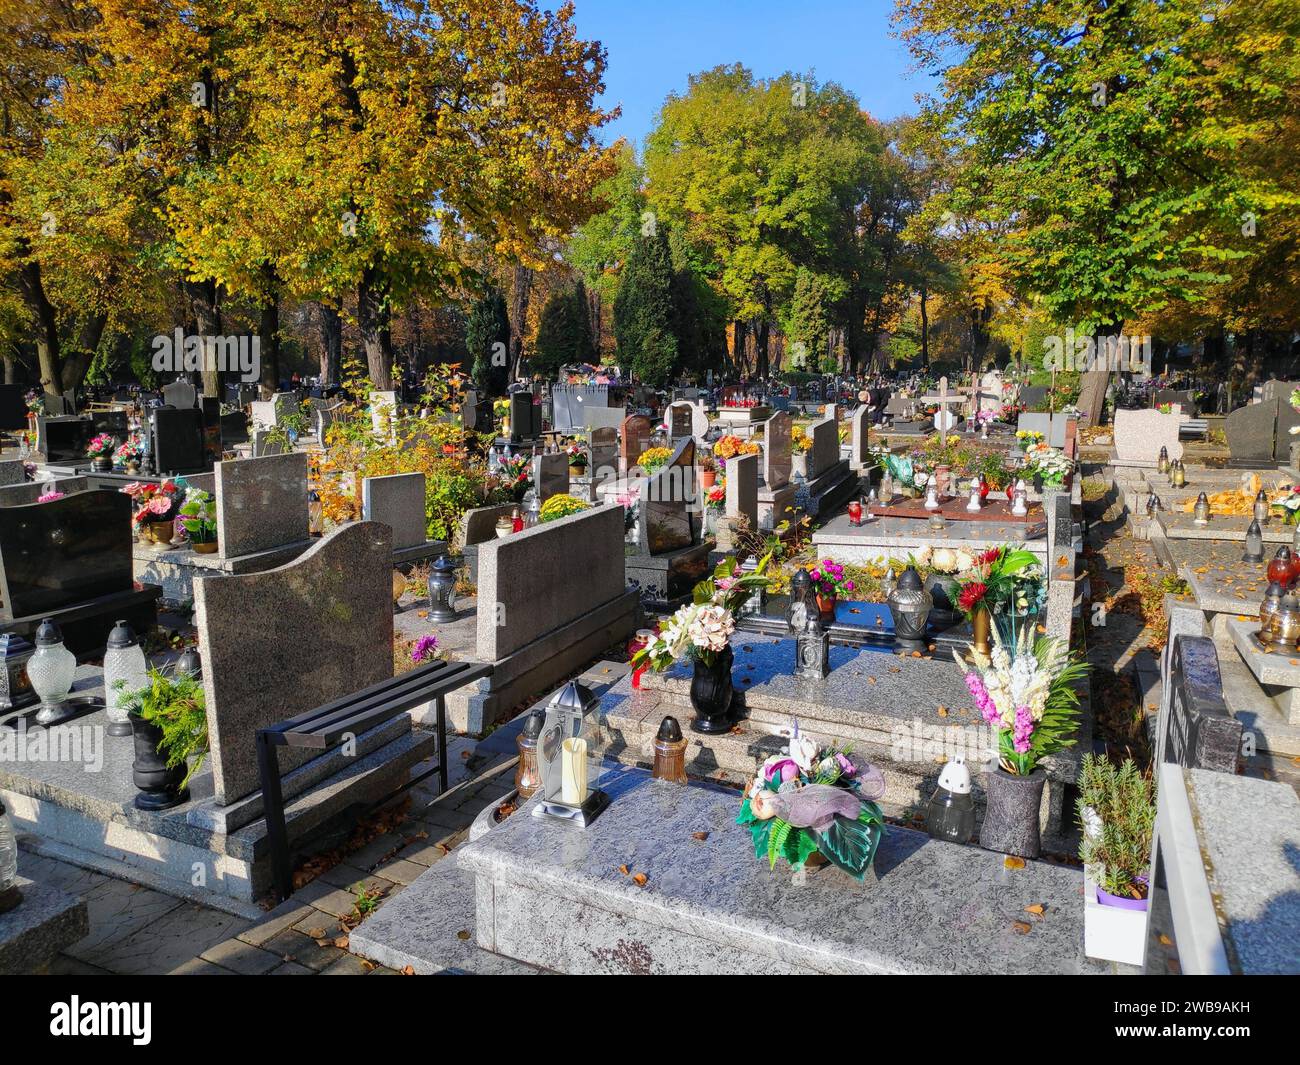 Grabkerzen auf einem Grab in Polen. Typische Friedhofsdekoration für Allerheiligen (Dzien Wszystkich Swietych) in Polen. Stockfoto